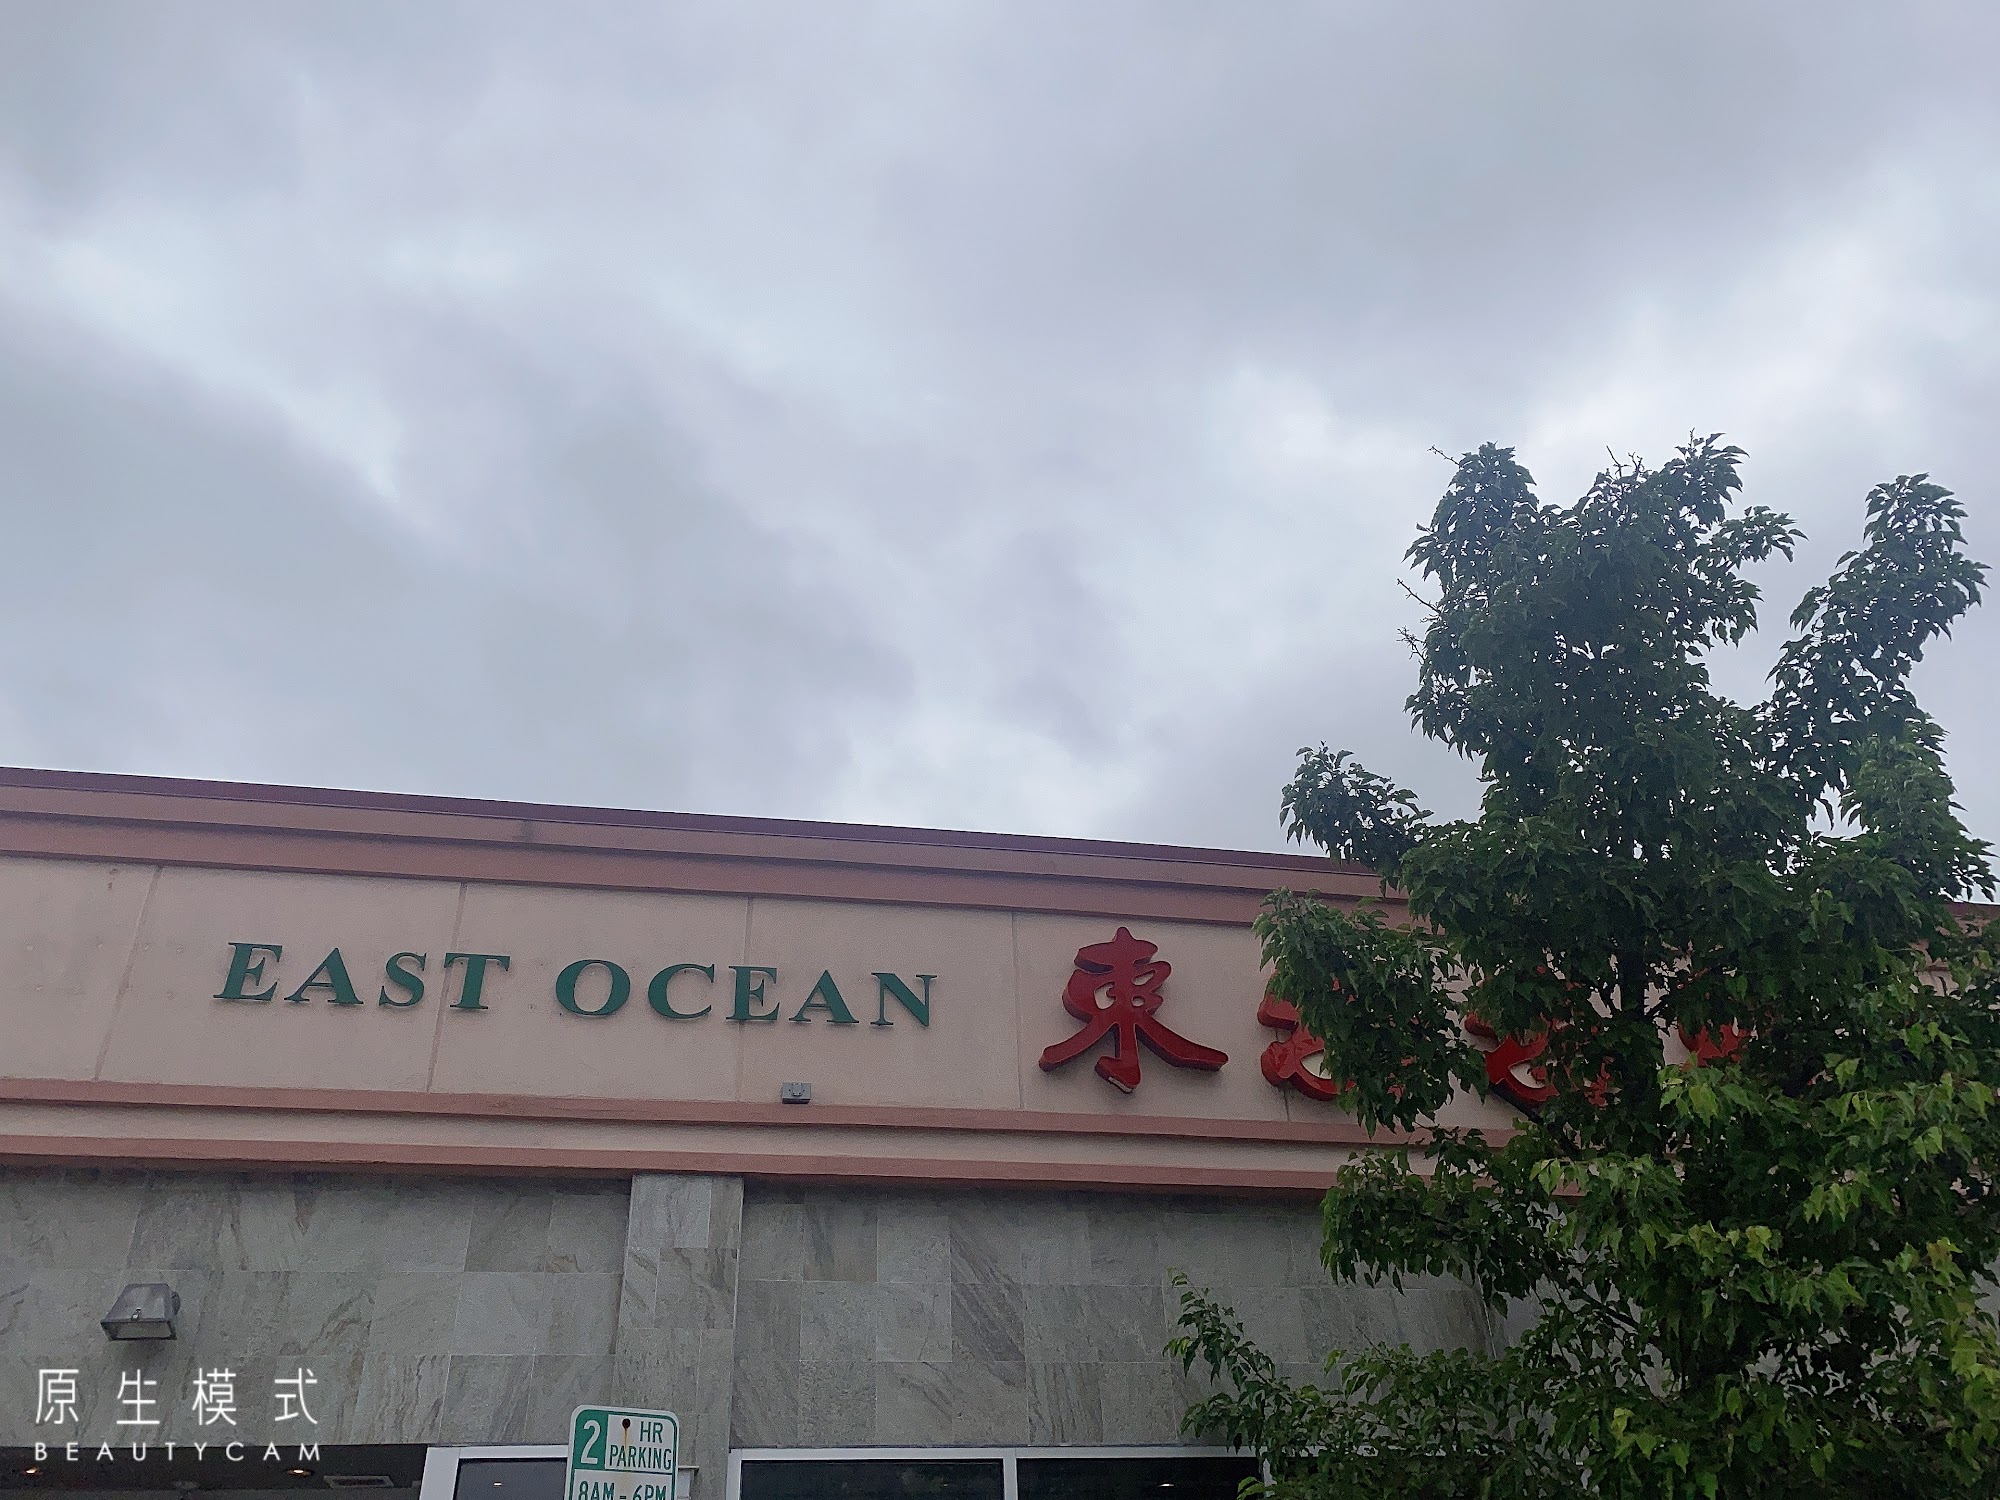 East Ocean Seafood Restaurant